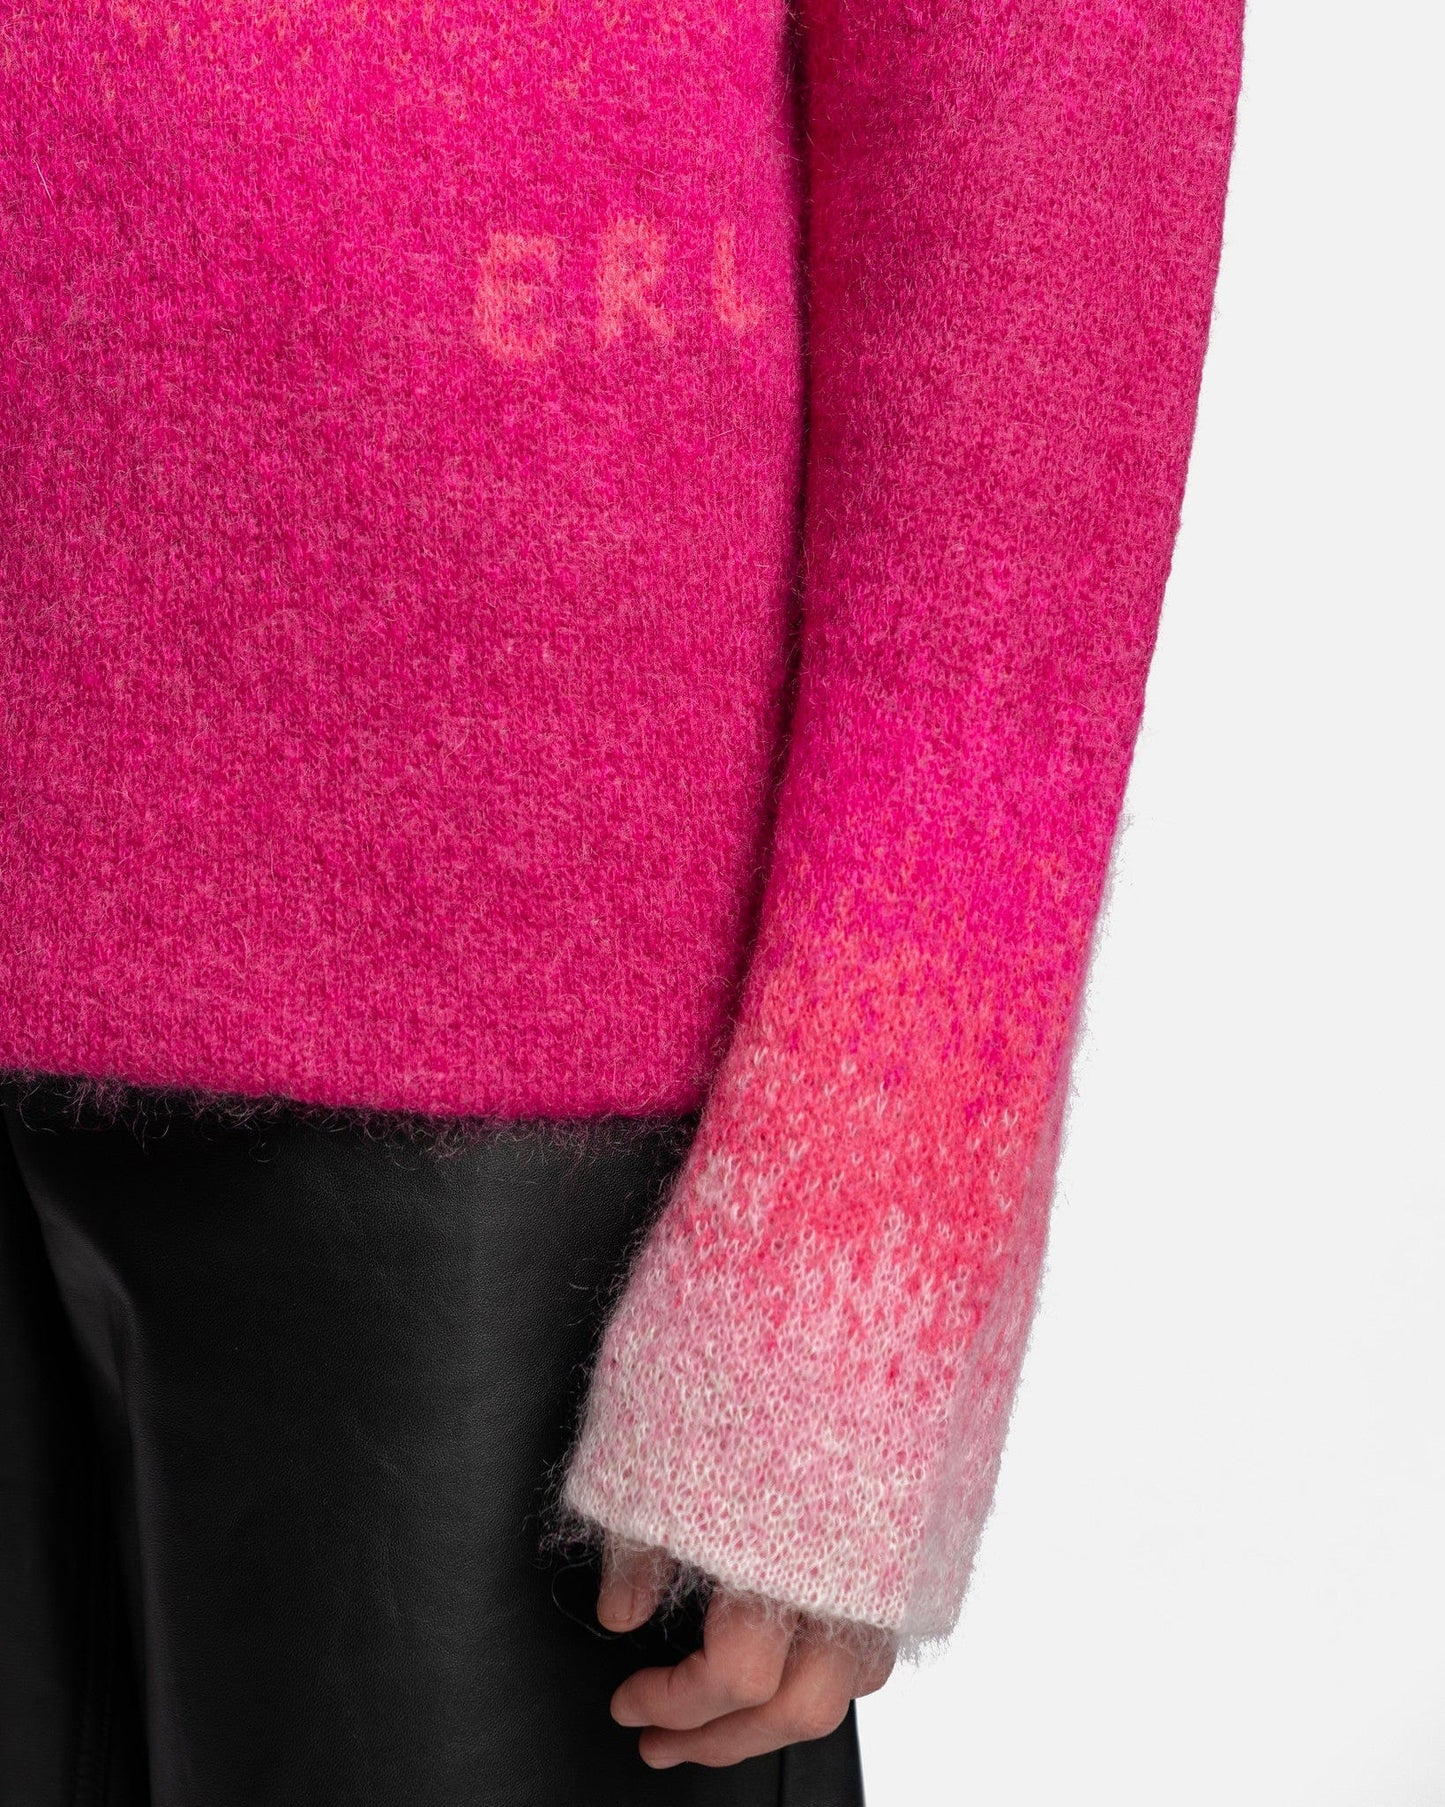 ERL Men's Sweater Gradient Crew Neck Sweater in Pink